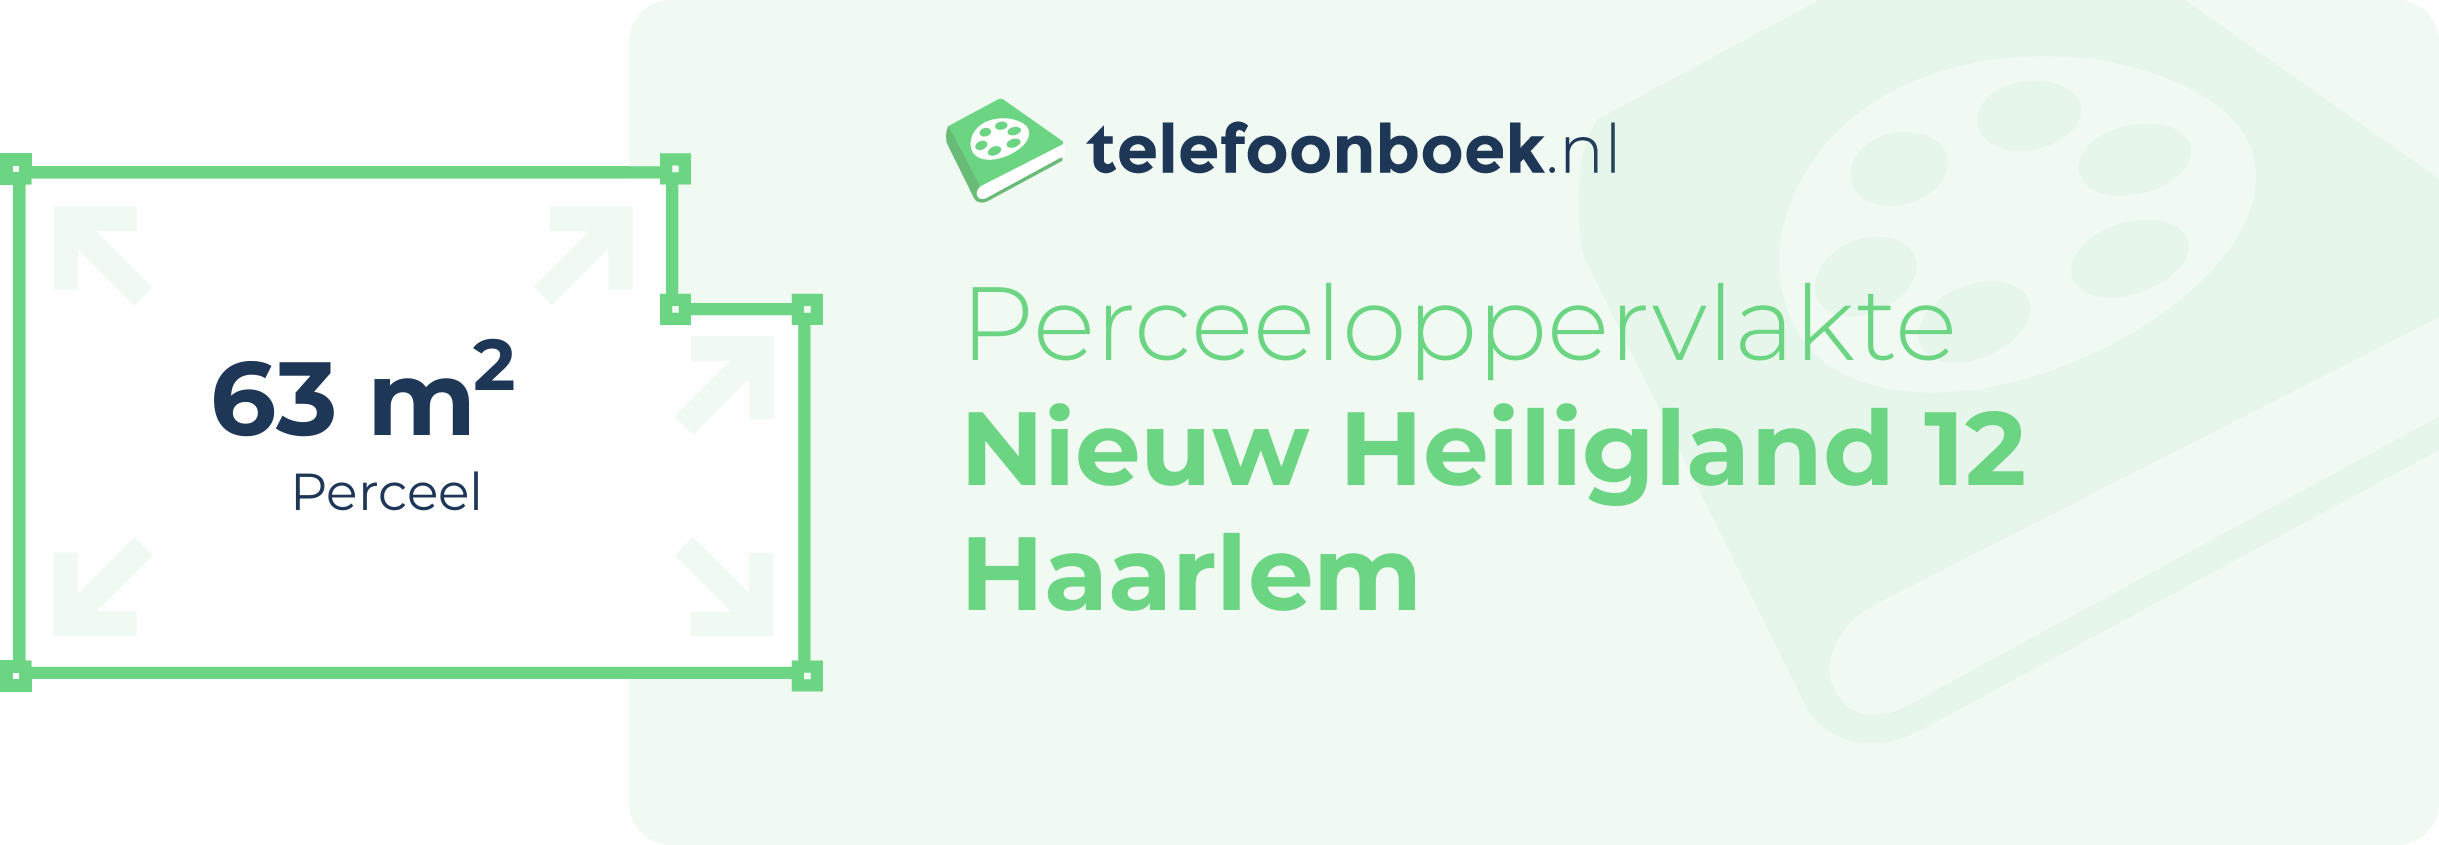 Perceeloppervlakte Nieuw Heiligland 12 Haarlem